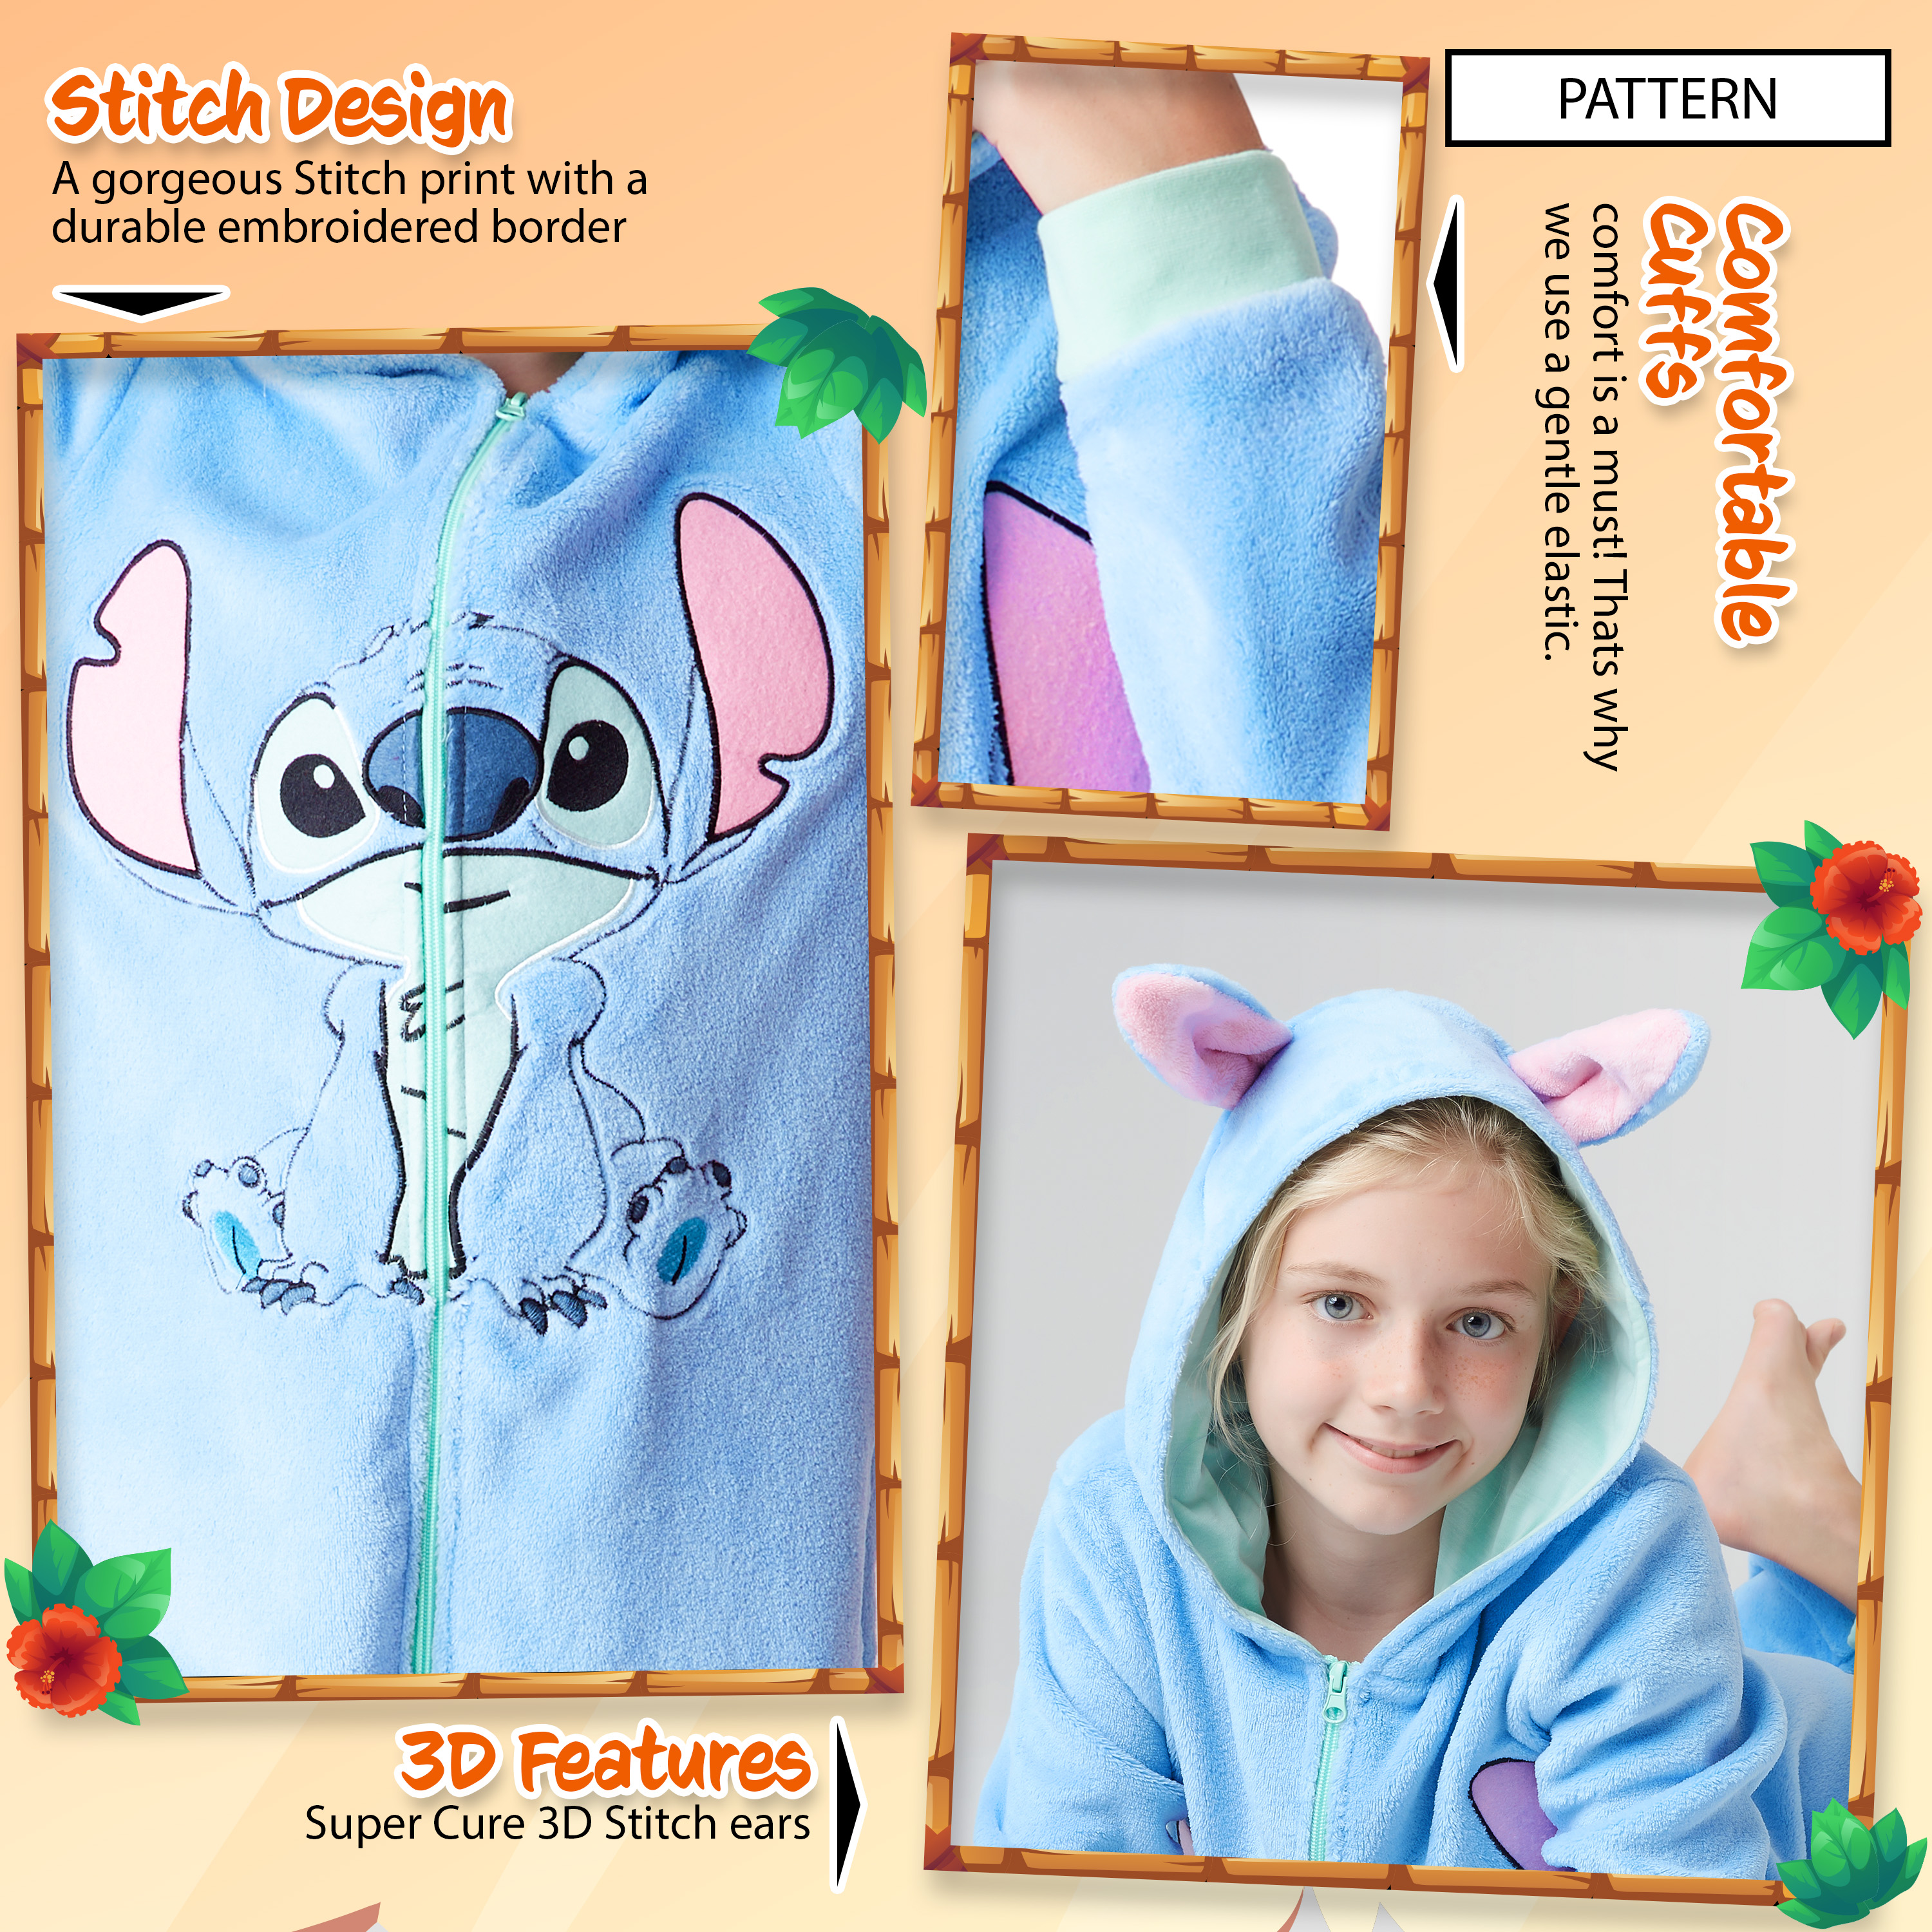 Pijama Stitch Nina